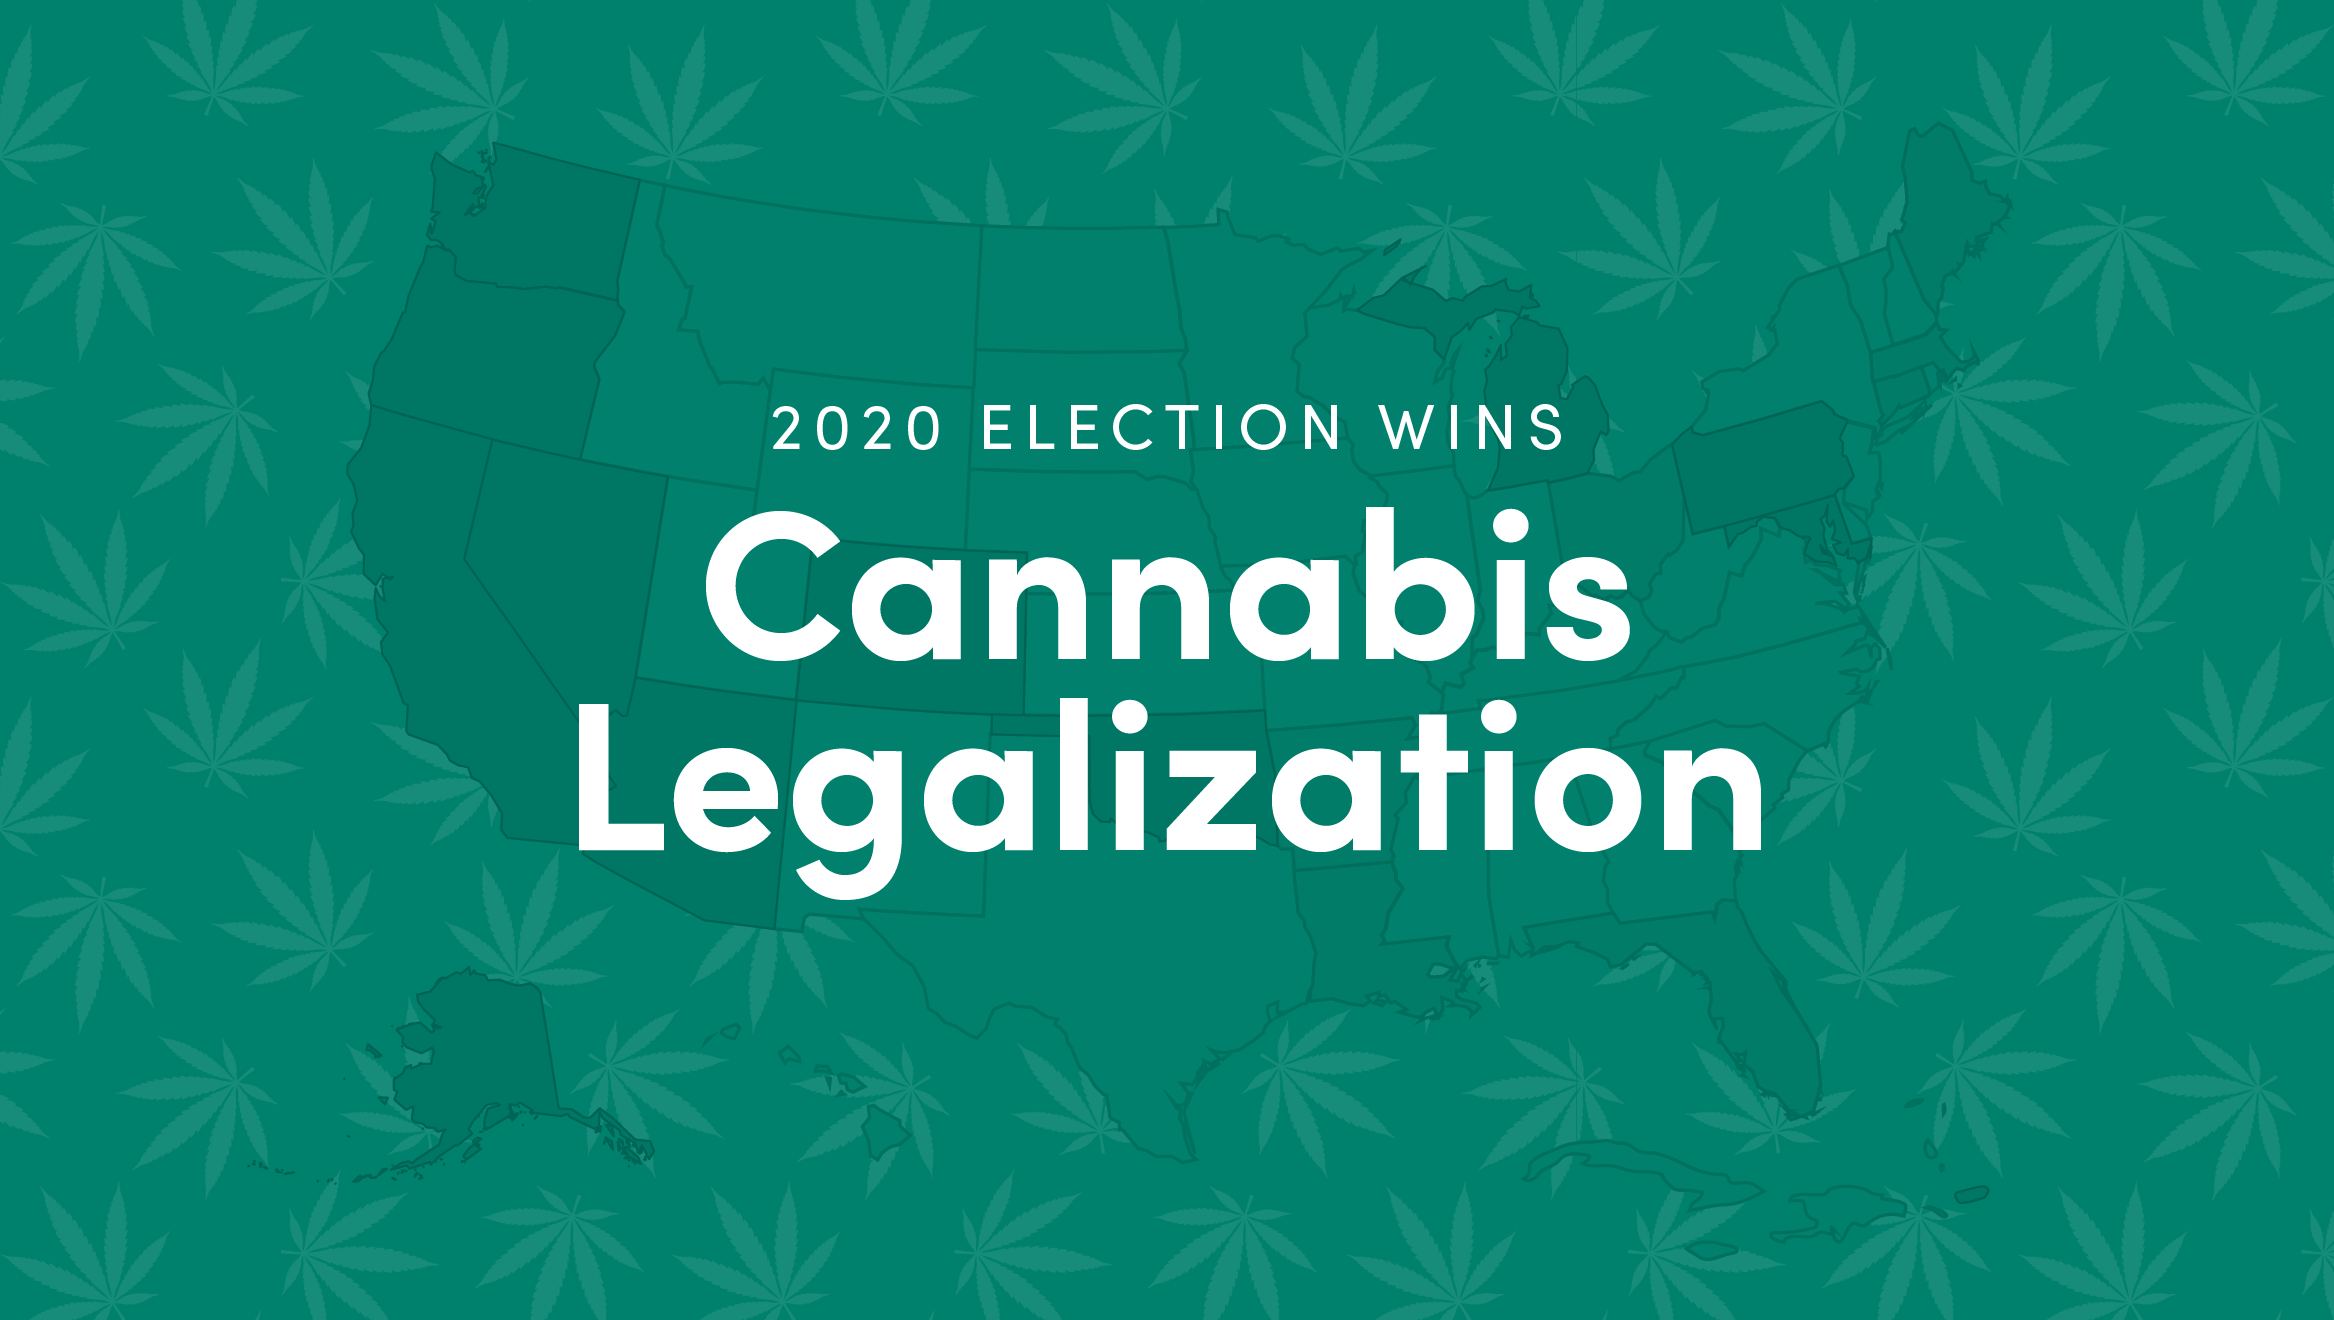 Where Cannabis Legalization Won in 2020